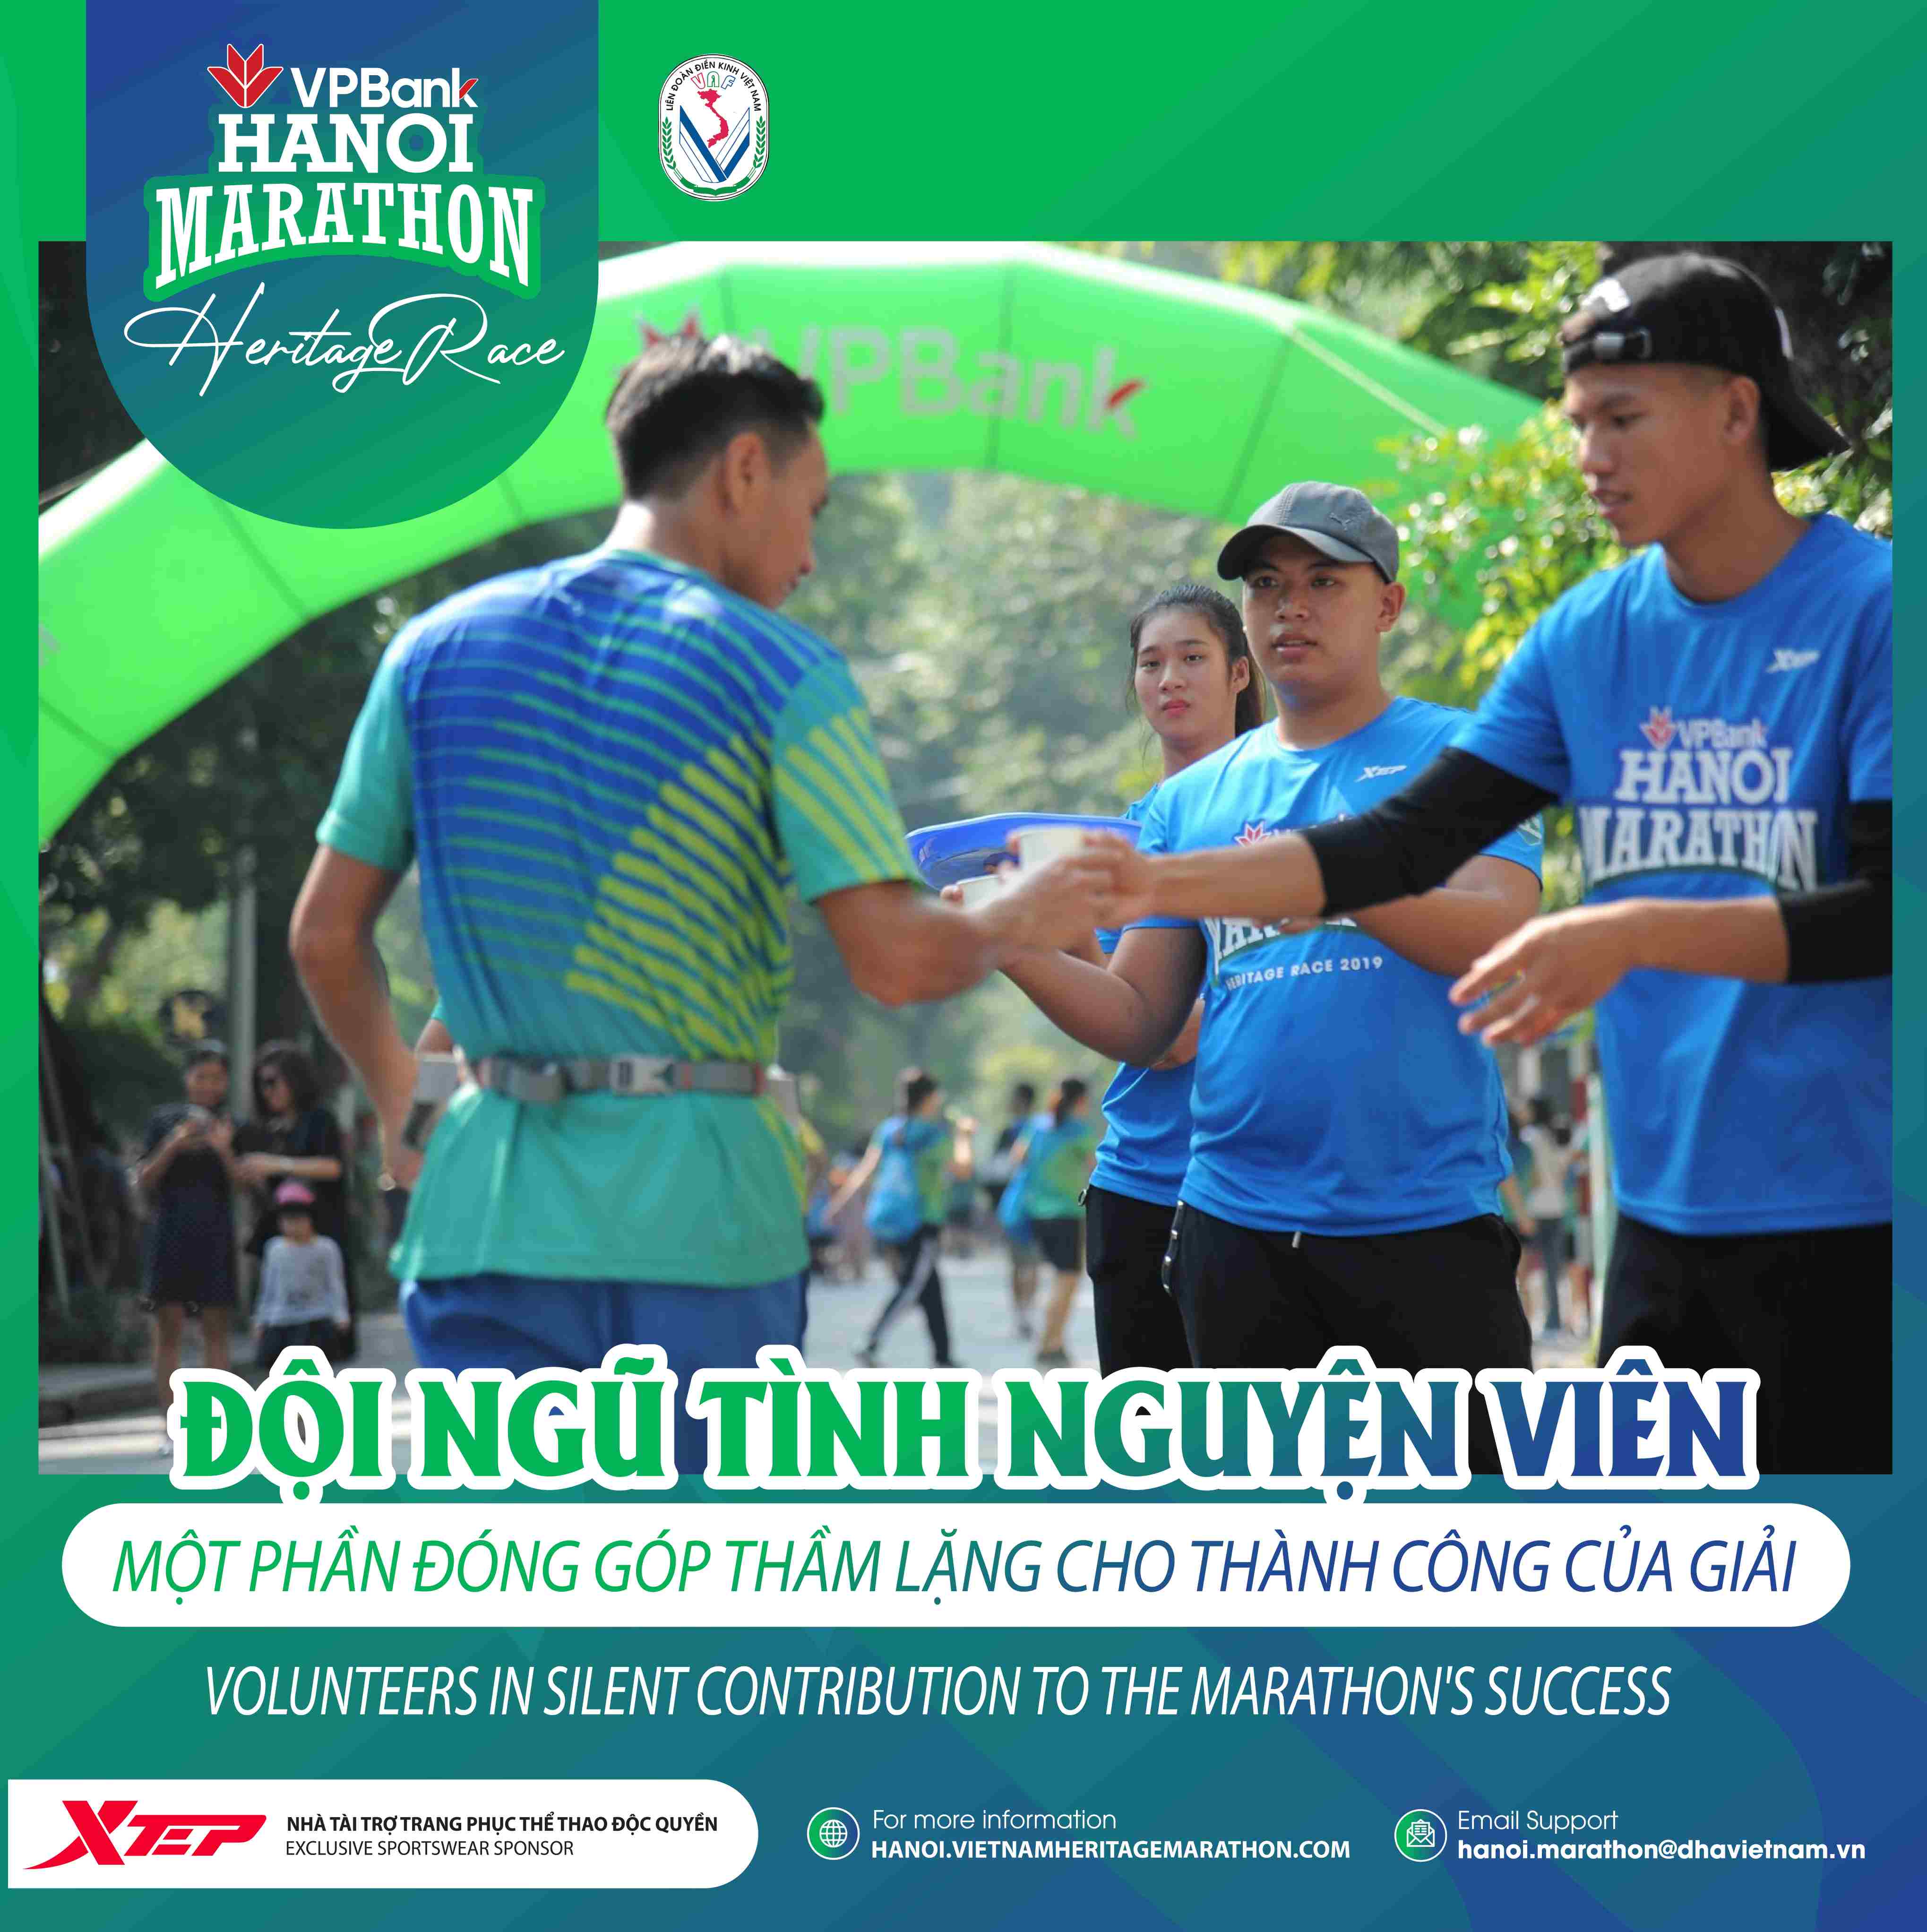 VPBank Hanoi Marathon Completes Training Volunteers